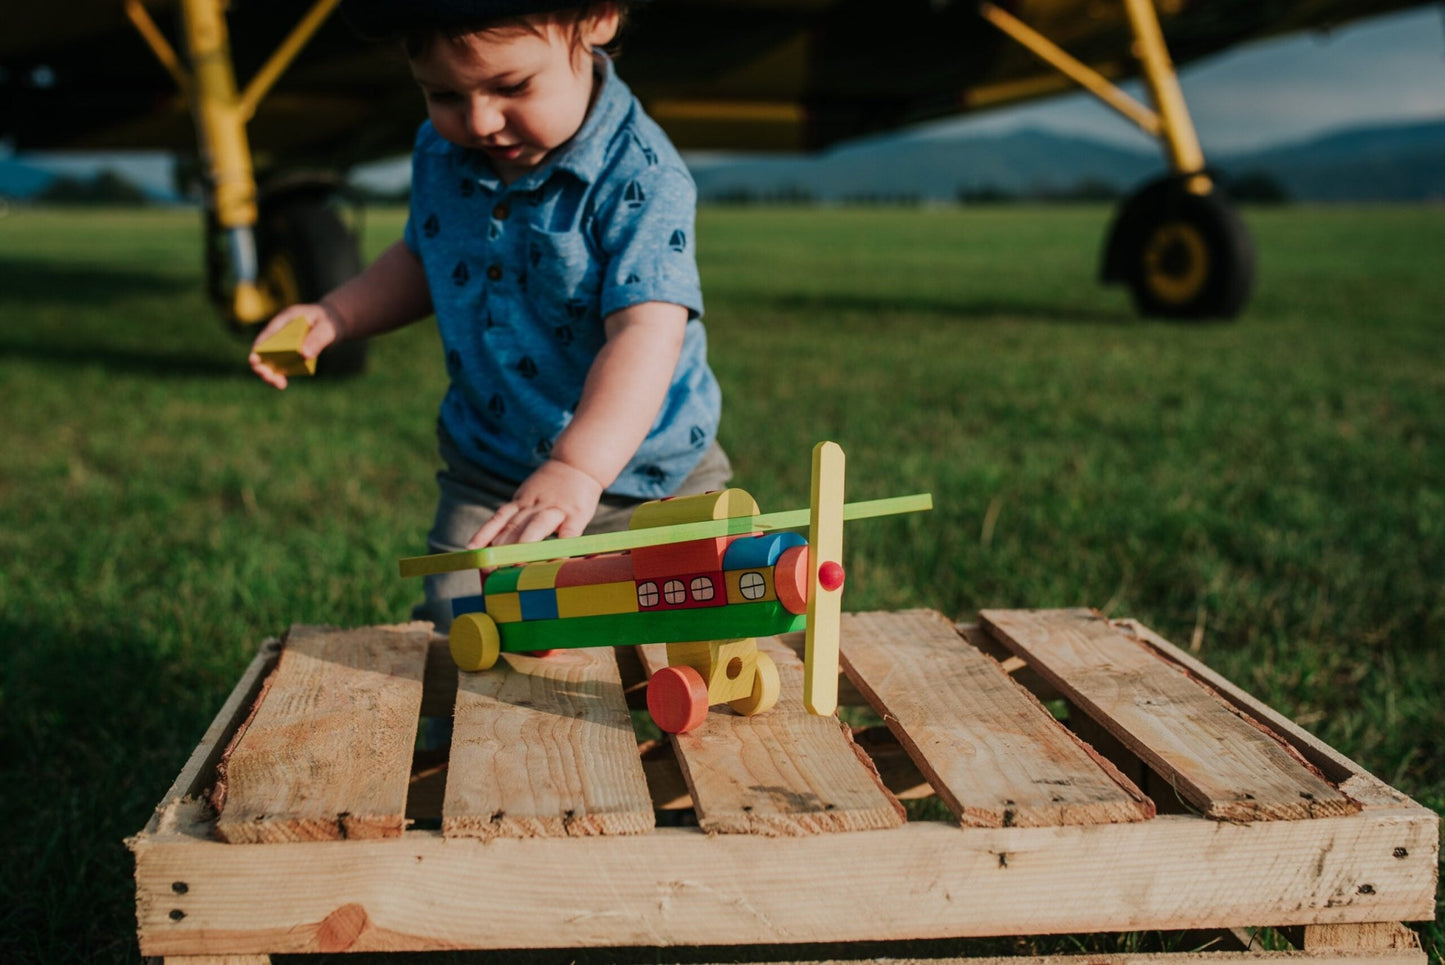 Tarnawa Toys - Vliegtuig met regenboog blokken - Playlaan